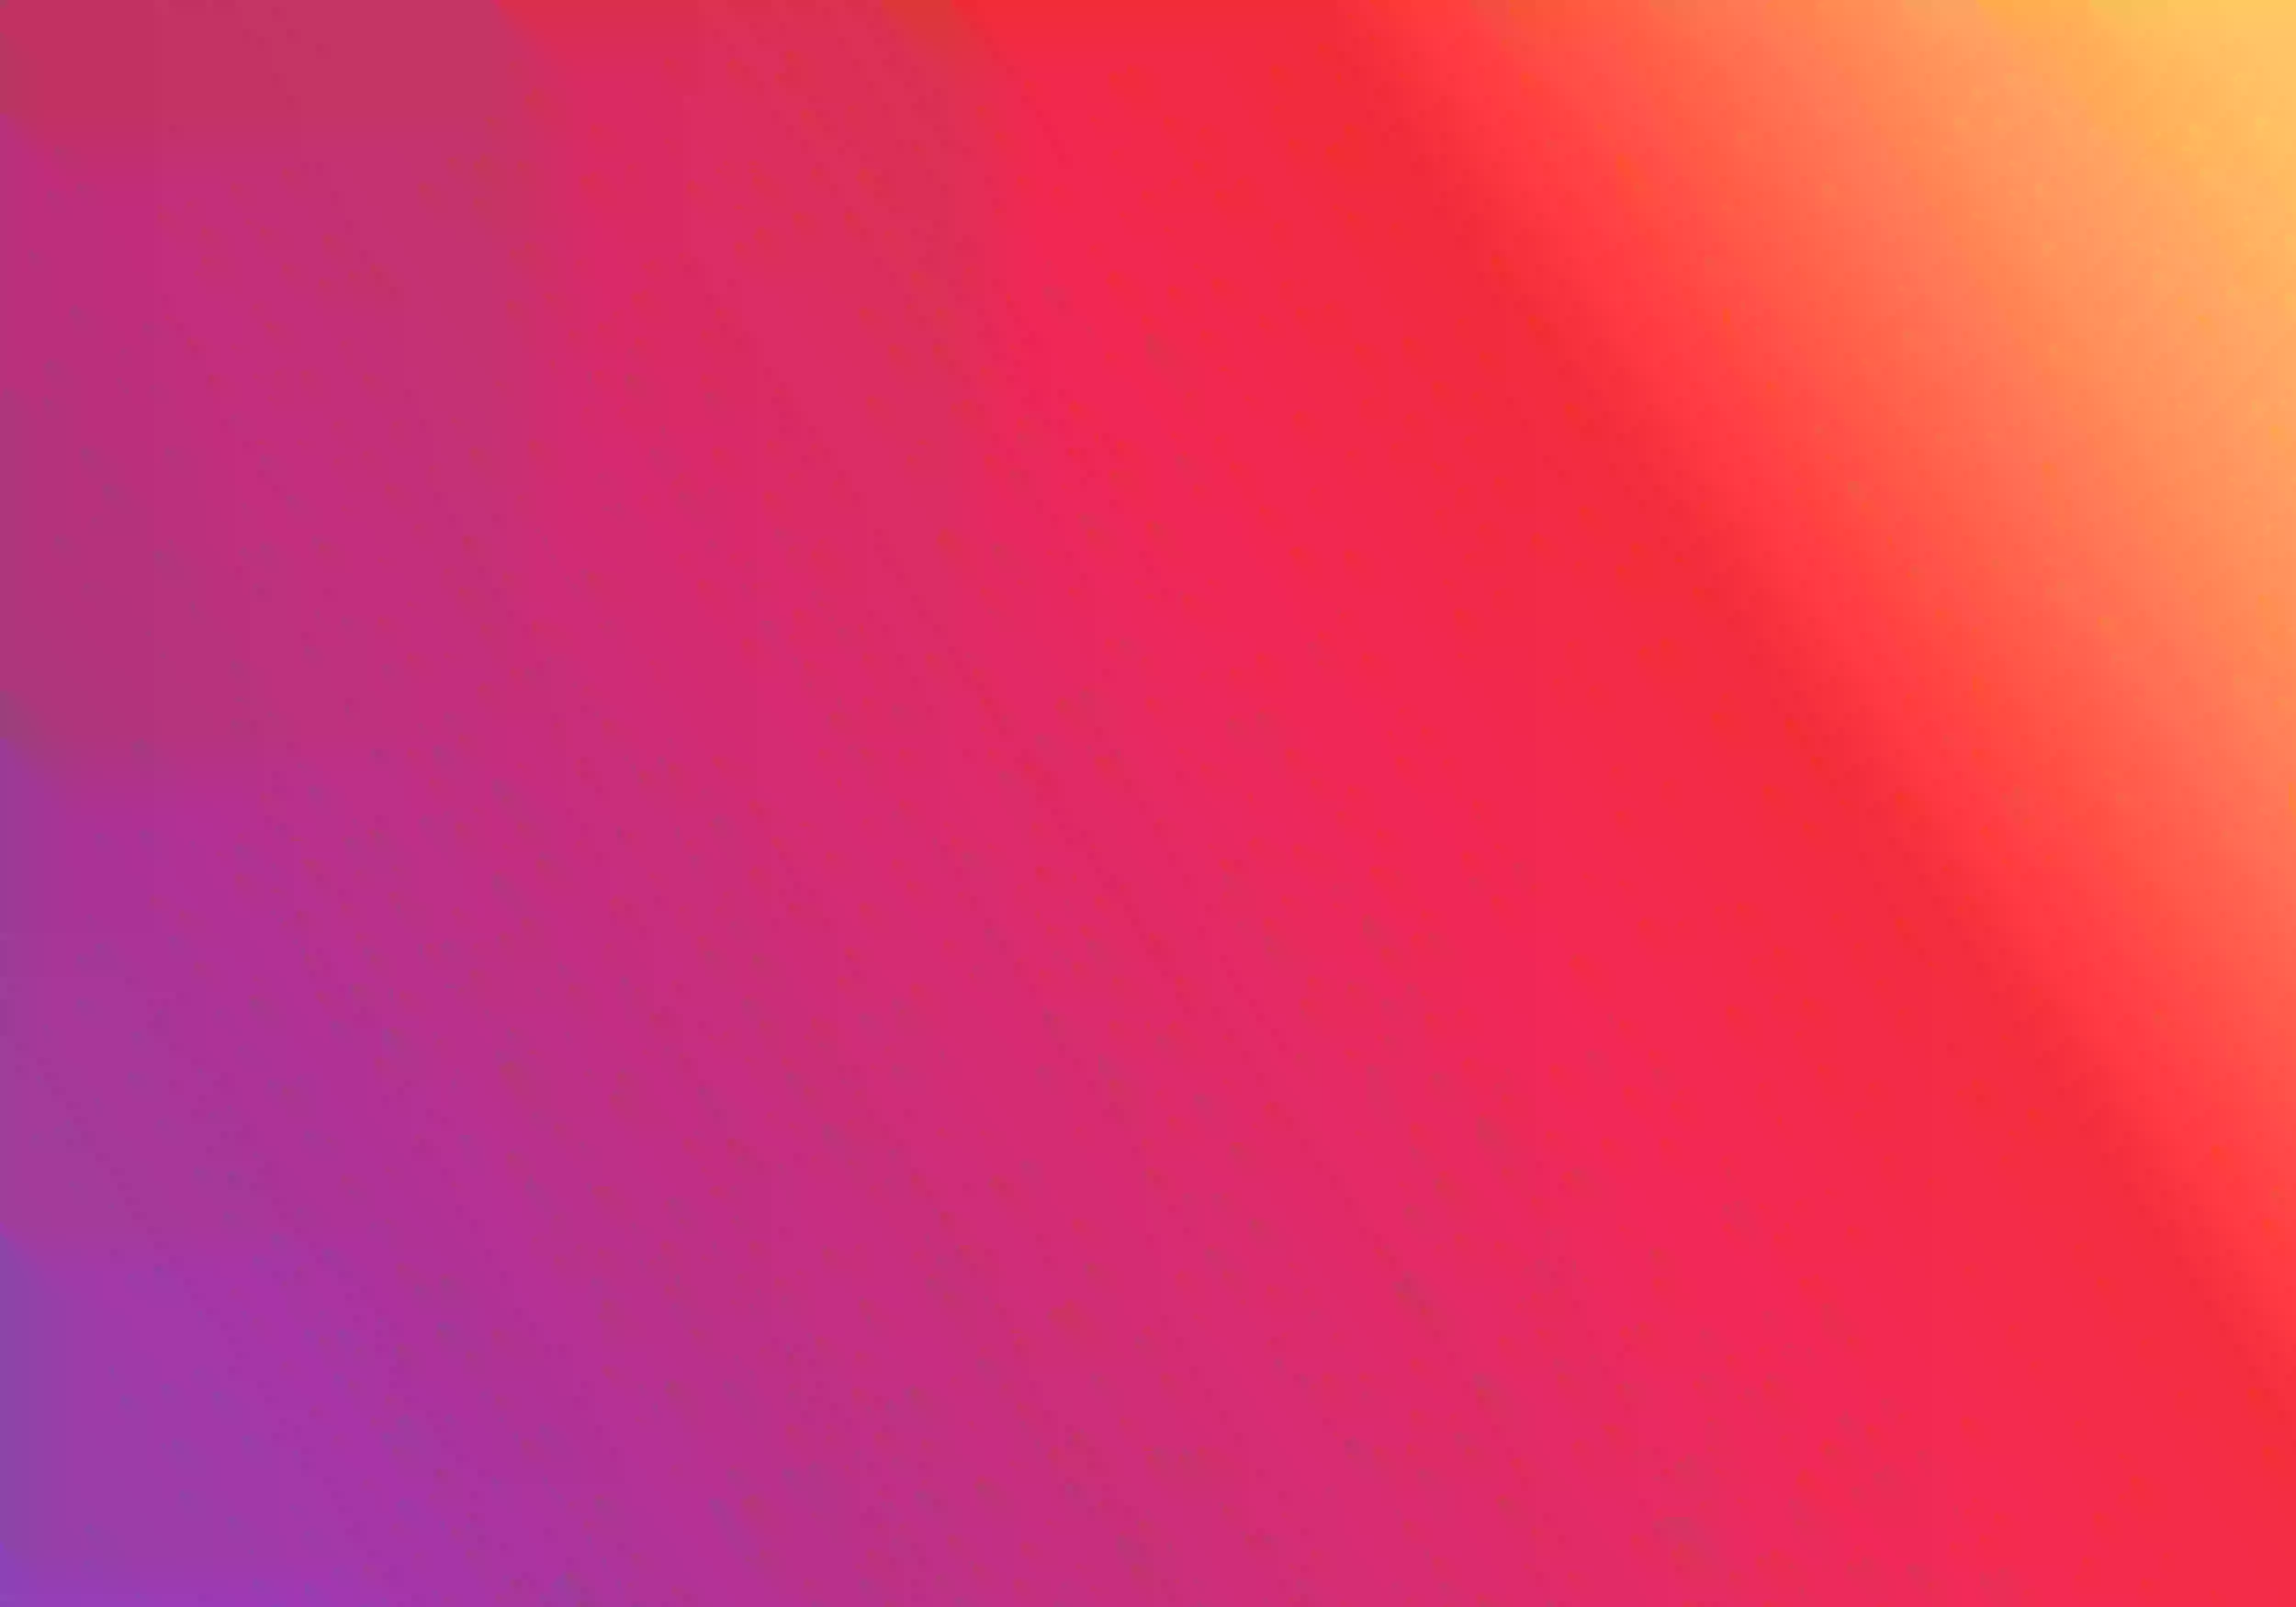 Imagem composta por várias faixas de cores usadas na logo do Instagram